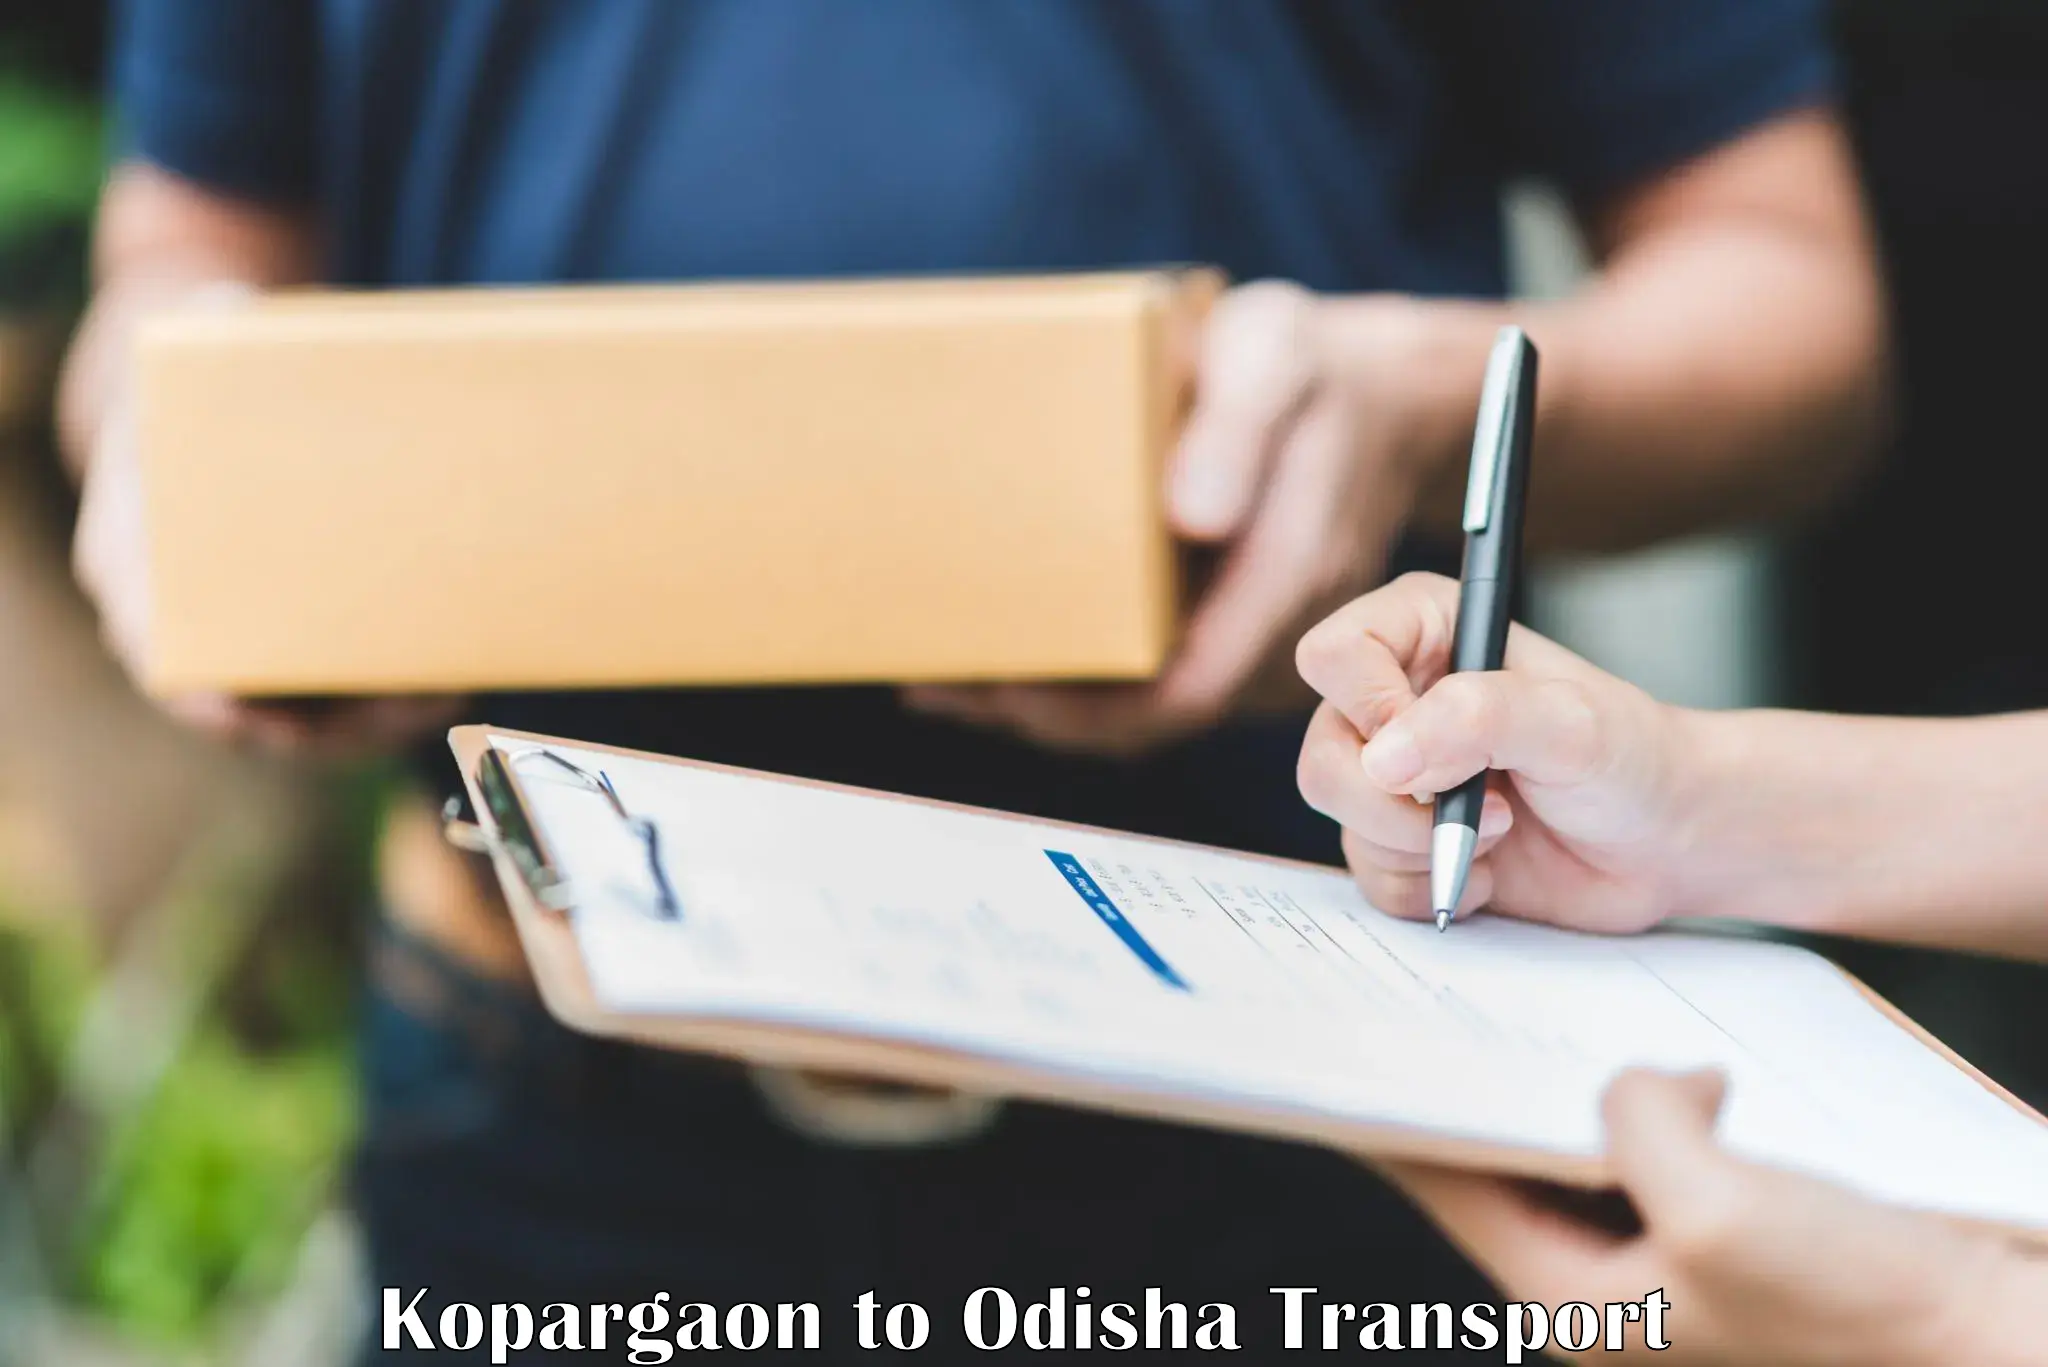 Online transport booking Kopargaon to Muribahal